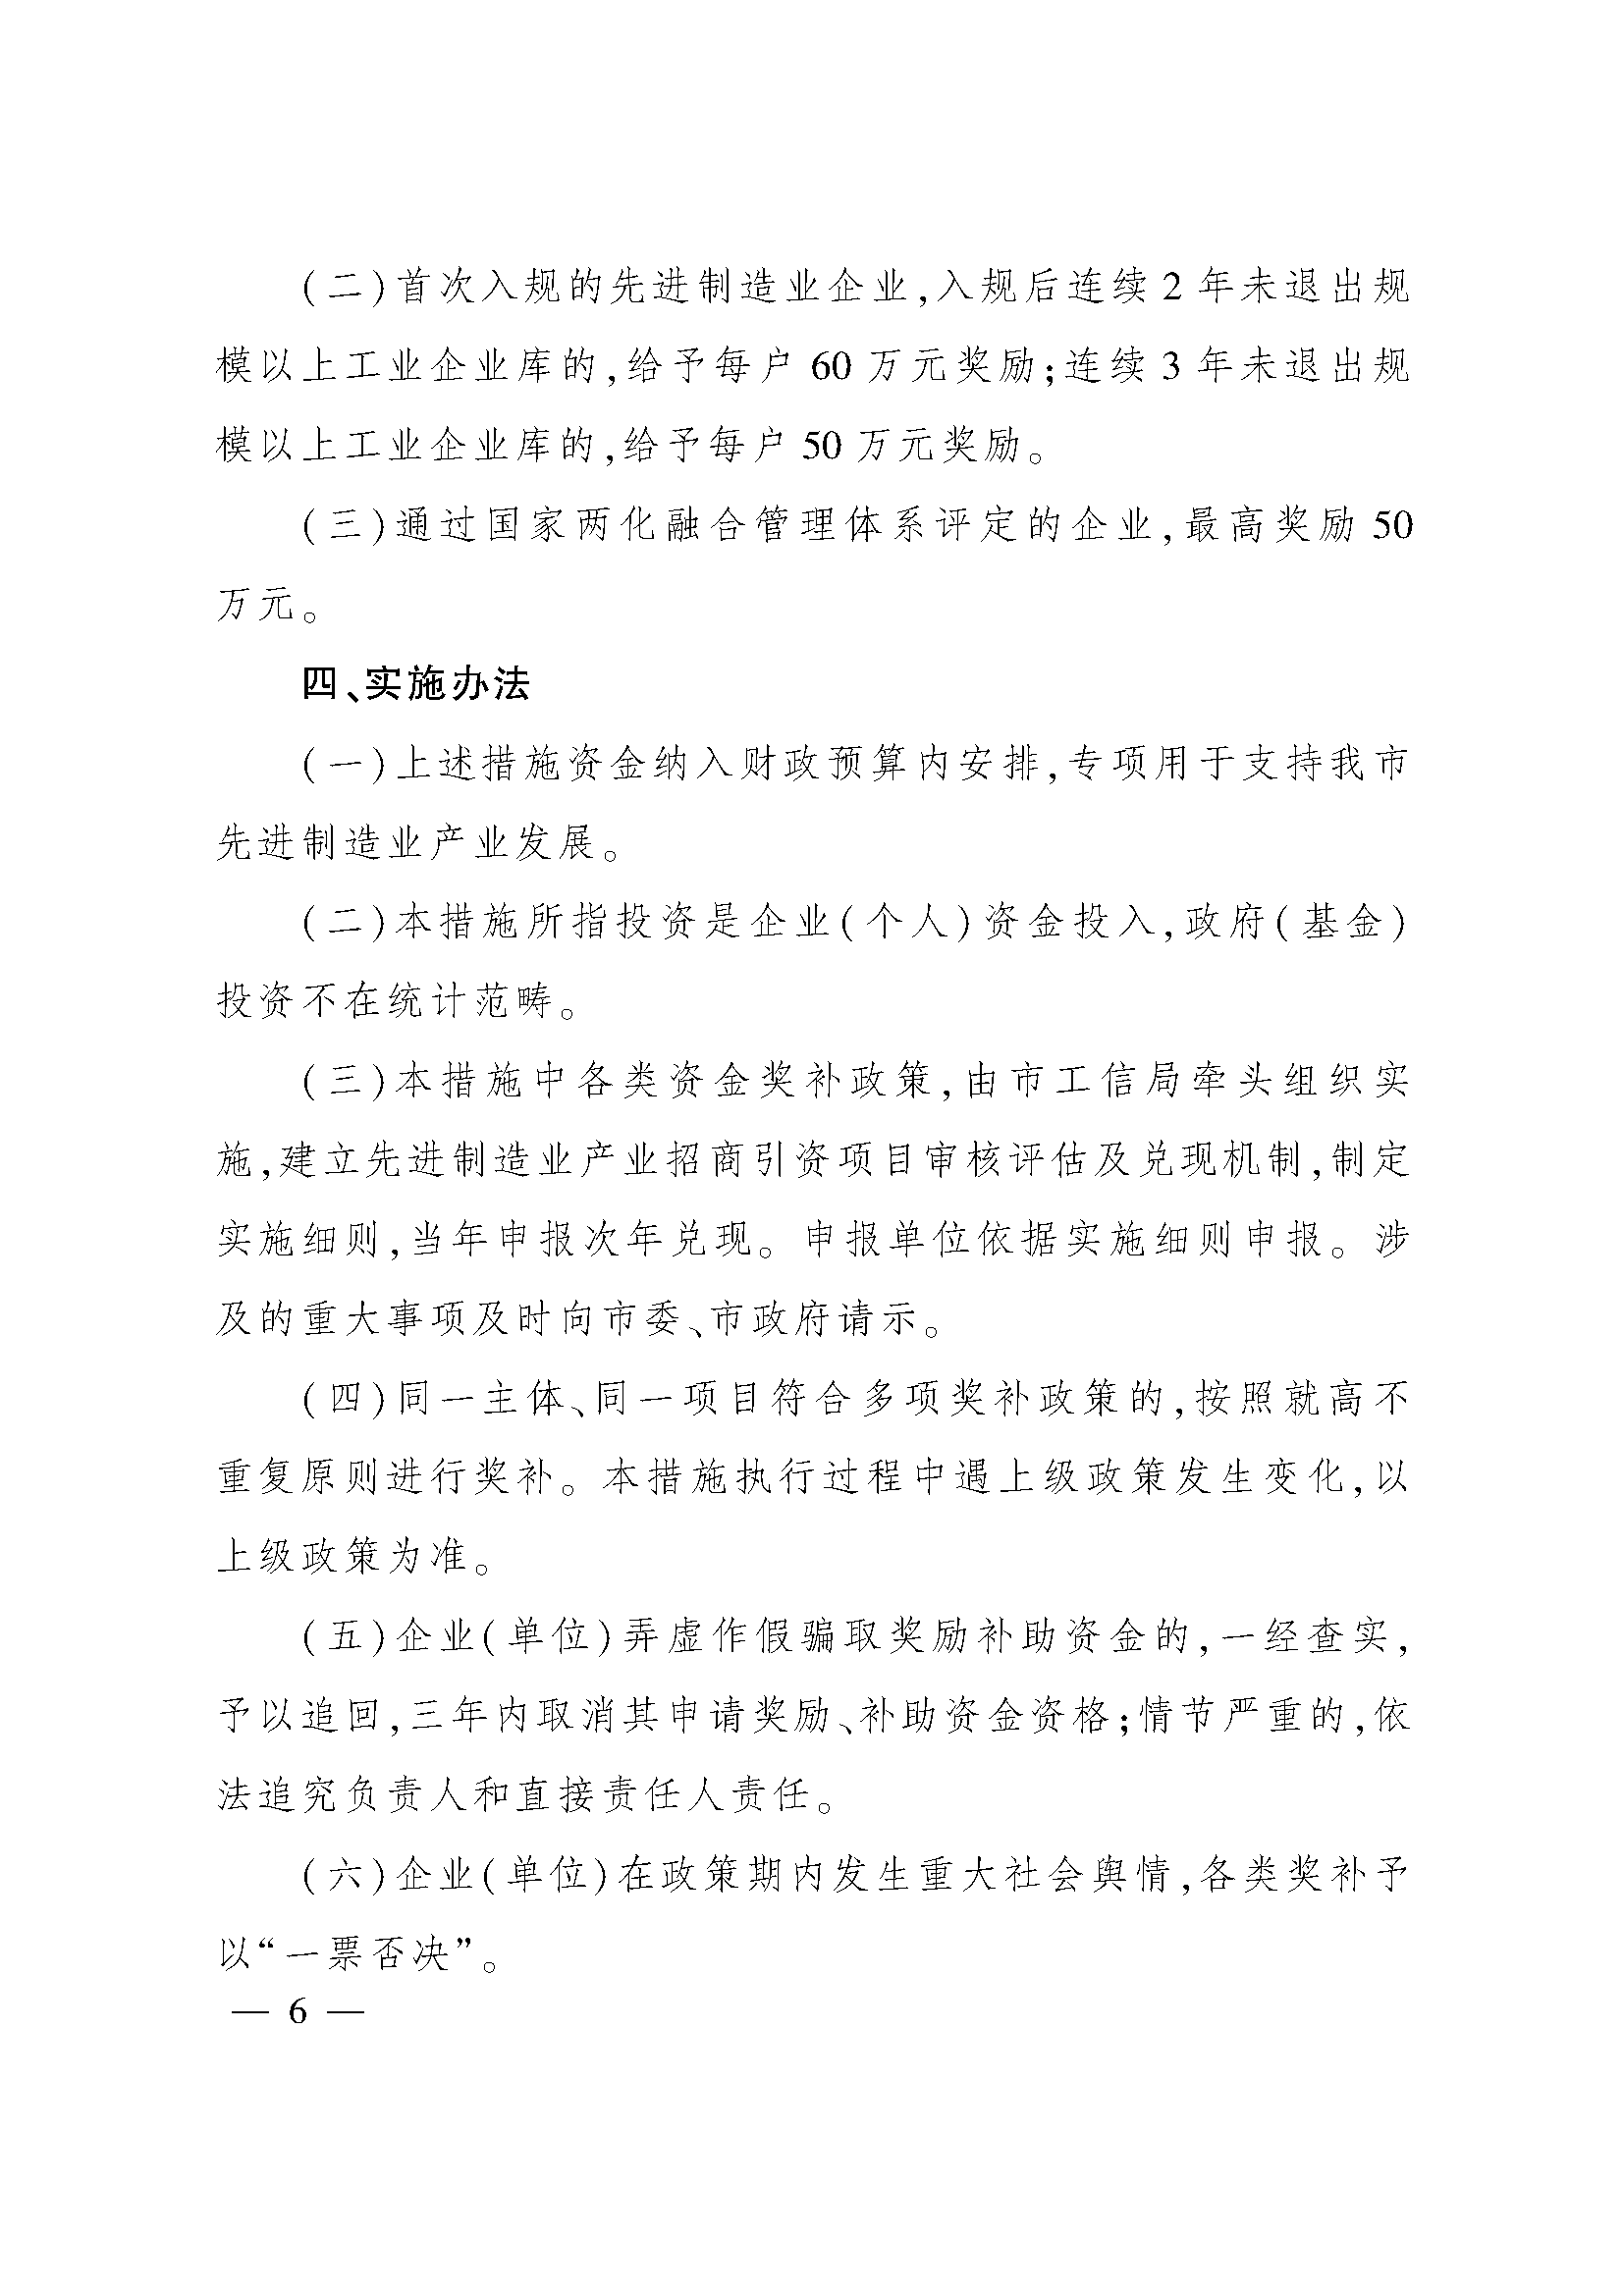 太原市人民政府办公室关于印发太原市招商引资若干措施的通知(图6)